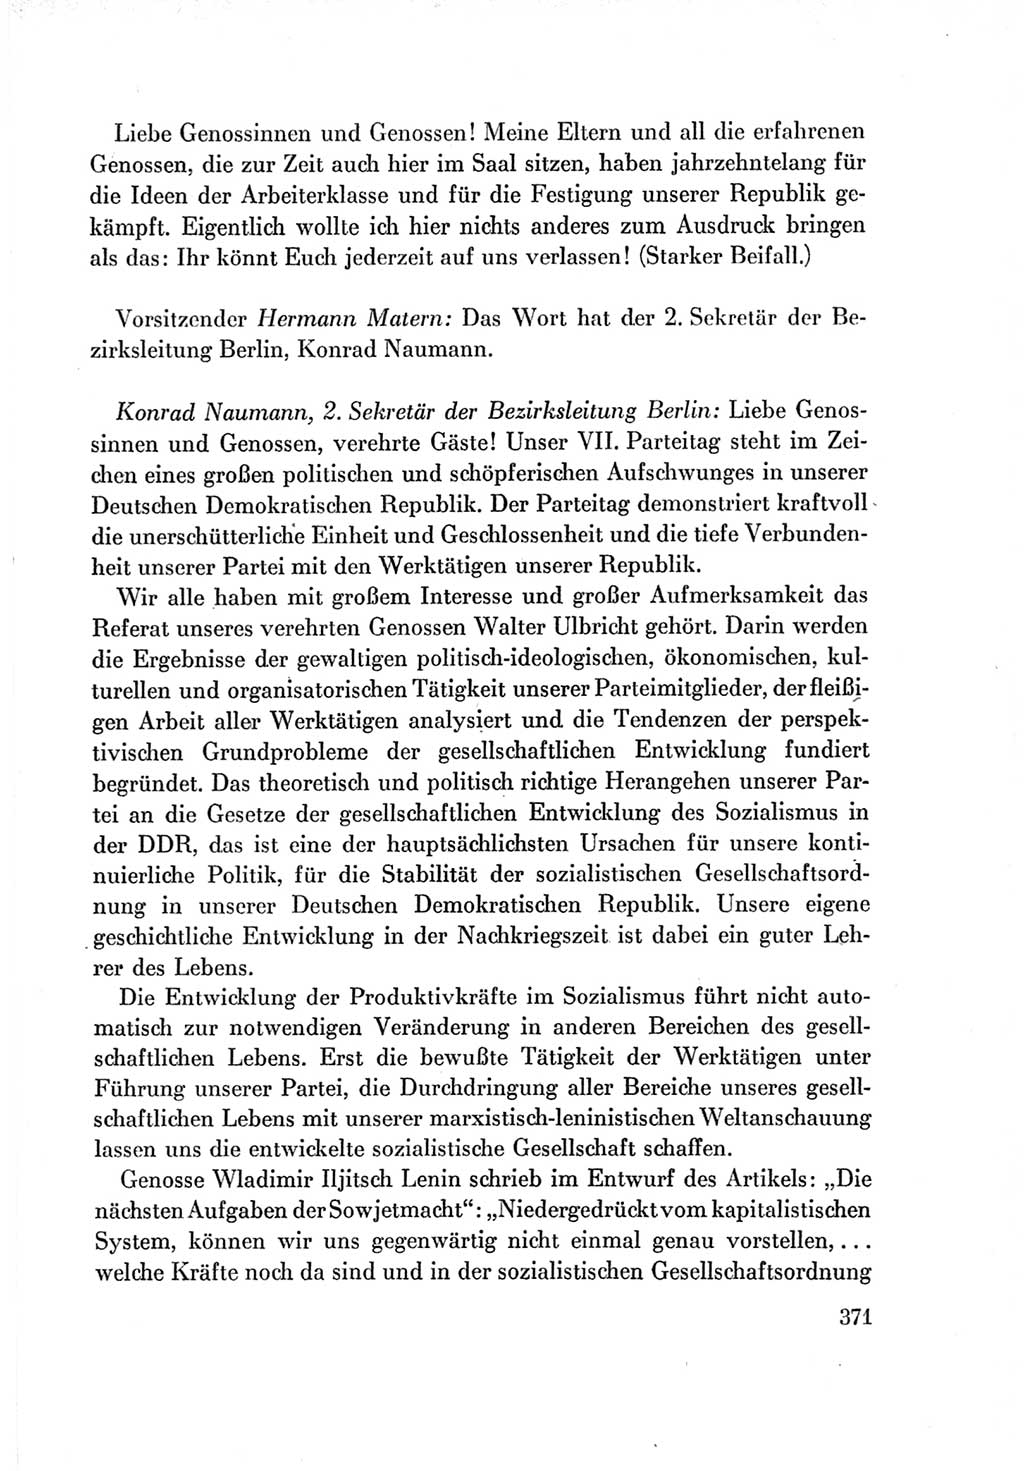 Protokoll der Verhandlungen des Ⅶ. Parteitages der Sozialistischen Einheitspartei Deutschlands (SED) [Deutsche Demokratische Republik (DDR)] 1967, Band Ⅰ, Seite 371 (Prot. Verh. Ⅶ. PT SED DDR 1967, Bd. Ⅰ, S. 371)